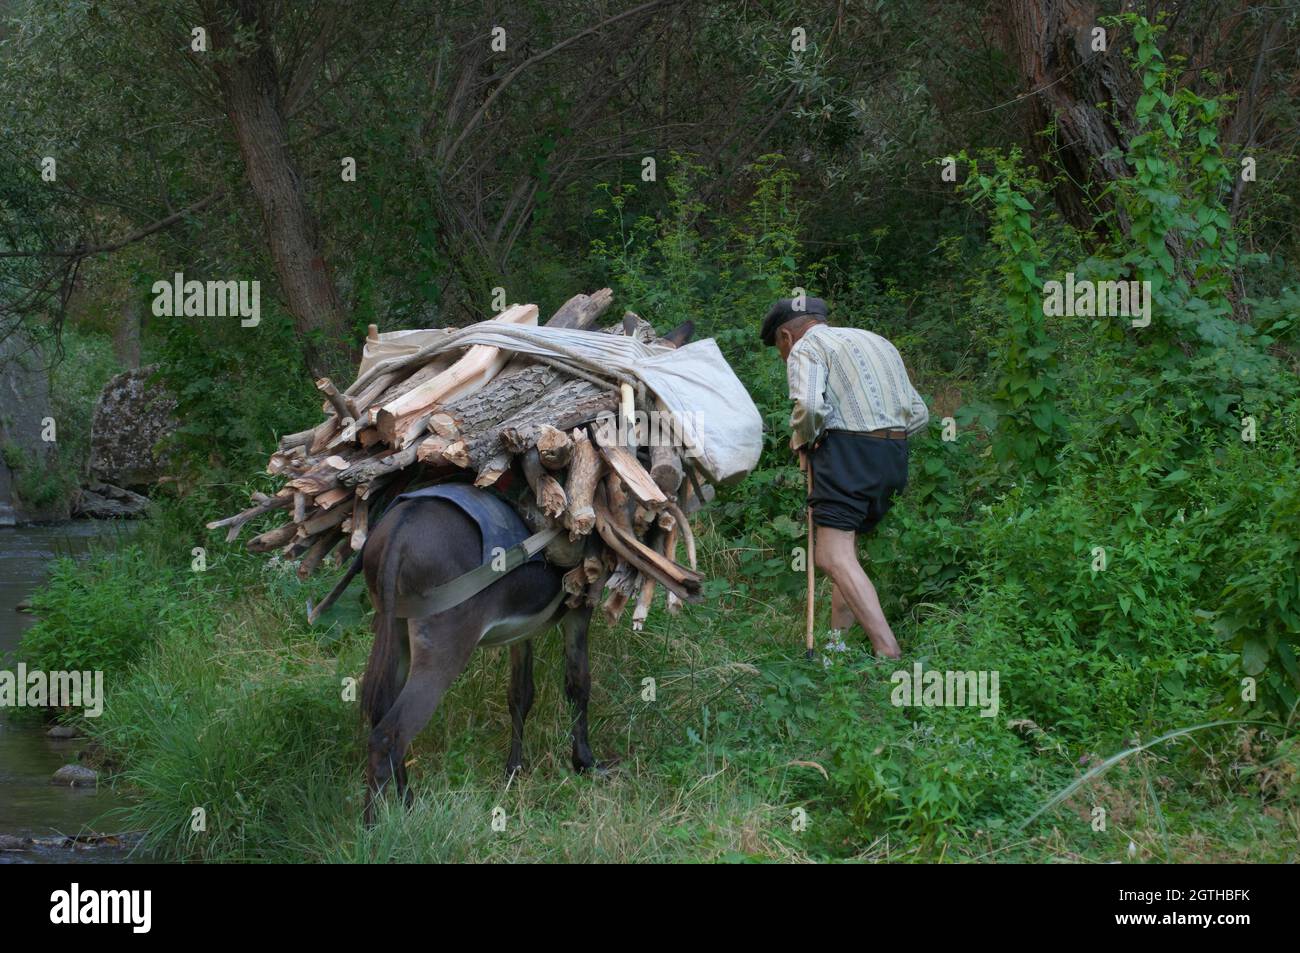 Economia e vita quotidiana in Turchia rurale un uomo molto vecchio con il suo asino caricato di legno per l'inverno arrotolato i suoi pantaloni a guado il fiume nel I. Foto Stock